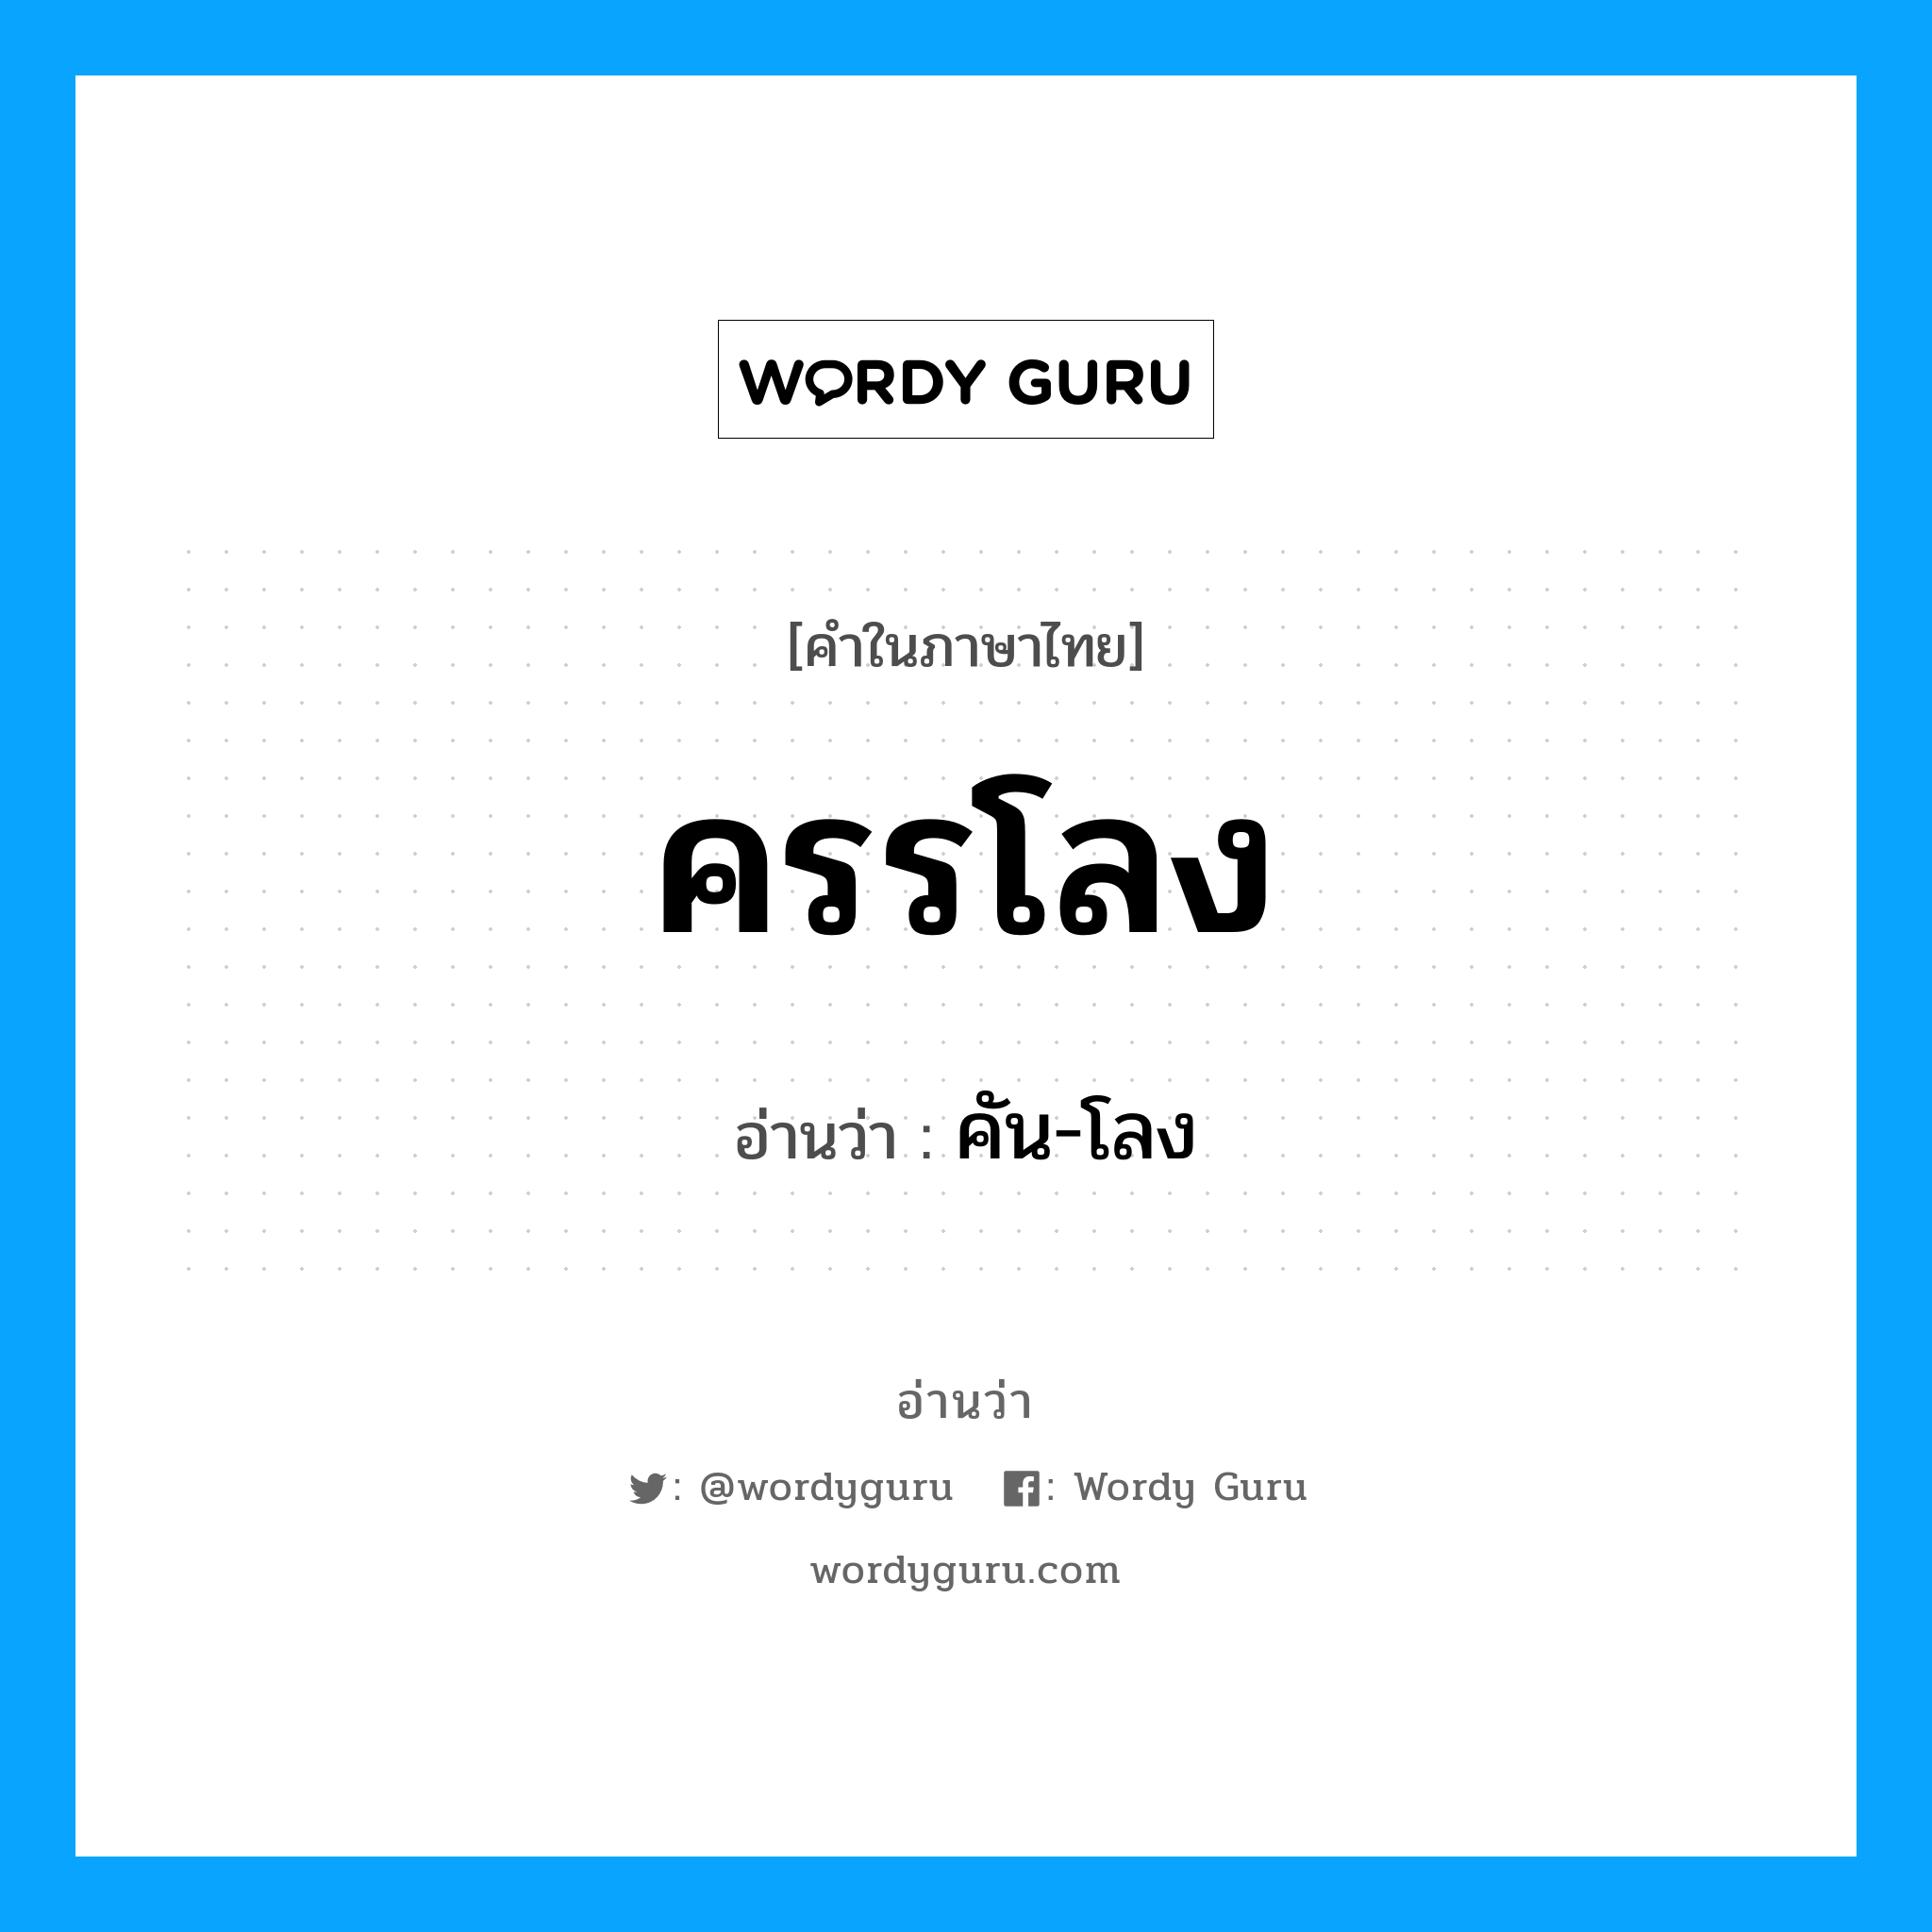 คัน-โลง เป็นคำอ่านของคำไหน?, คำในภาษาไทย คัน-โลง อ่านว่า ครรโลง